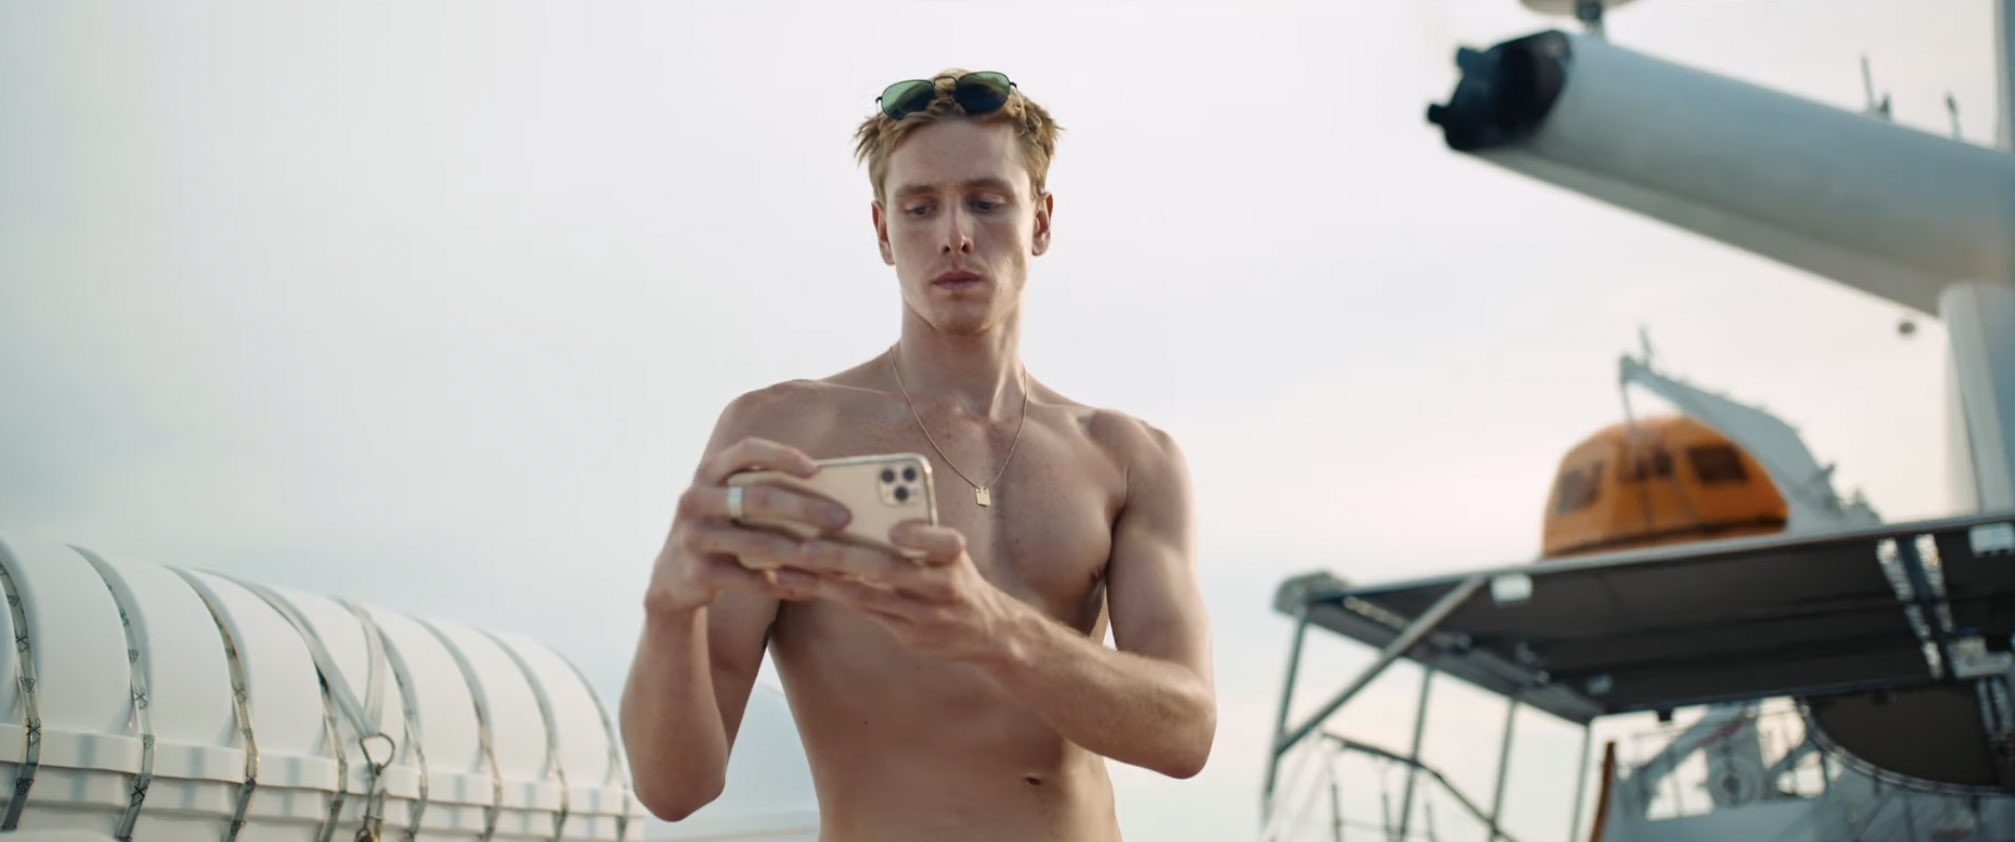 Cena do filme Triângulo da Tristeza, mostra um homem branco, sarado e sem camisa, tirando uma foto com um celular em posição horizontal. Ao fundo, vemos o céu e está de dia. 